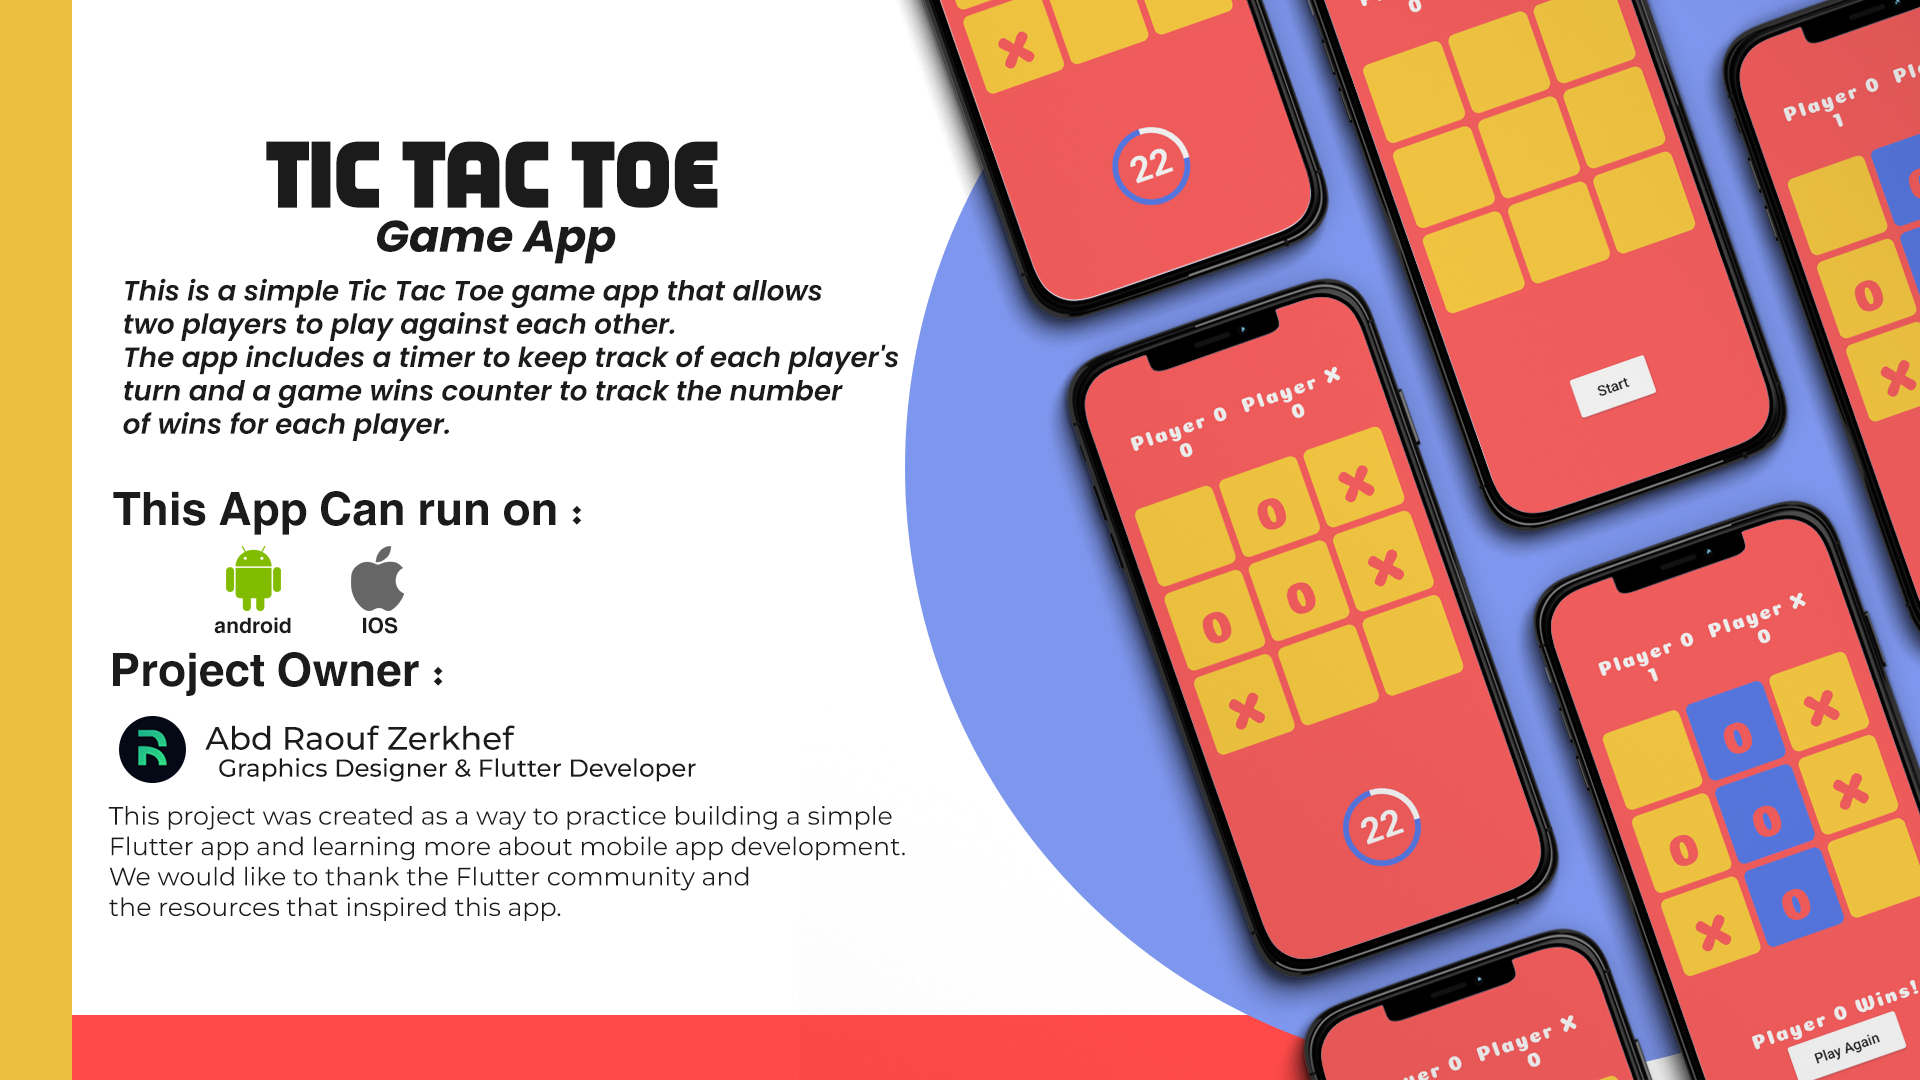 Tic Tac Toe Game App using Flutter